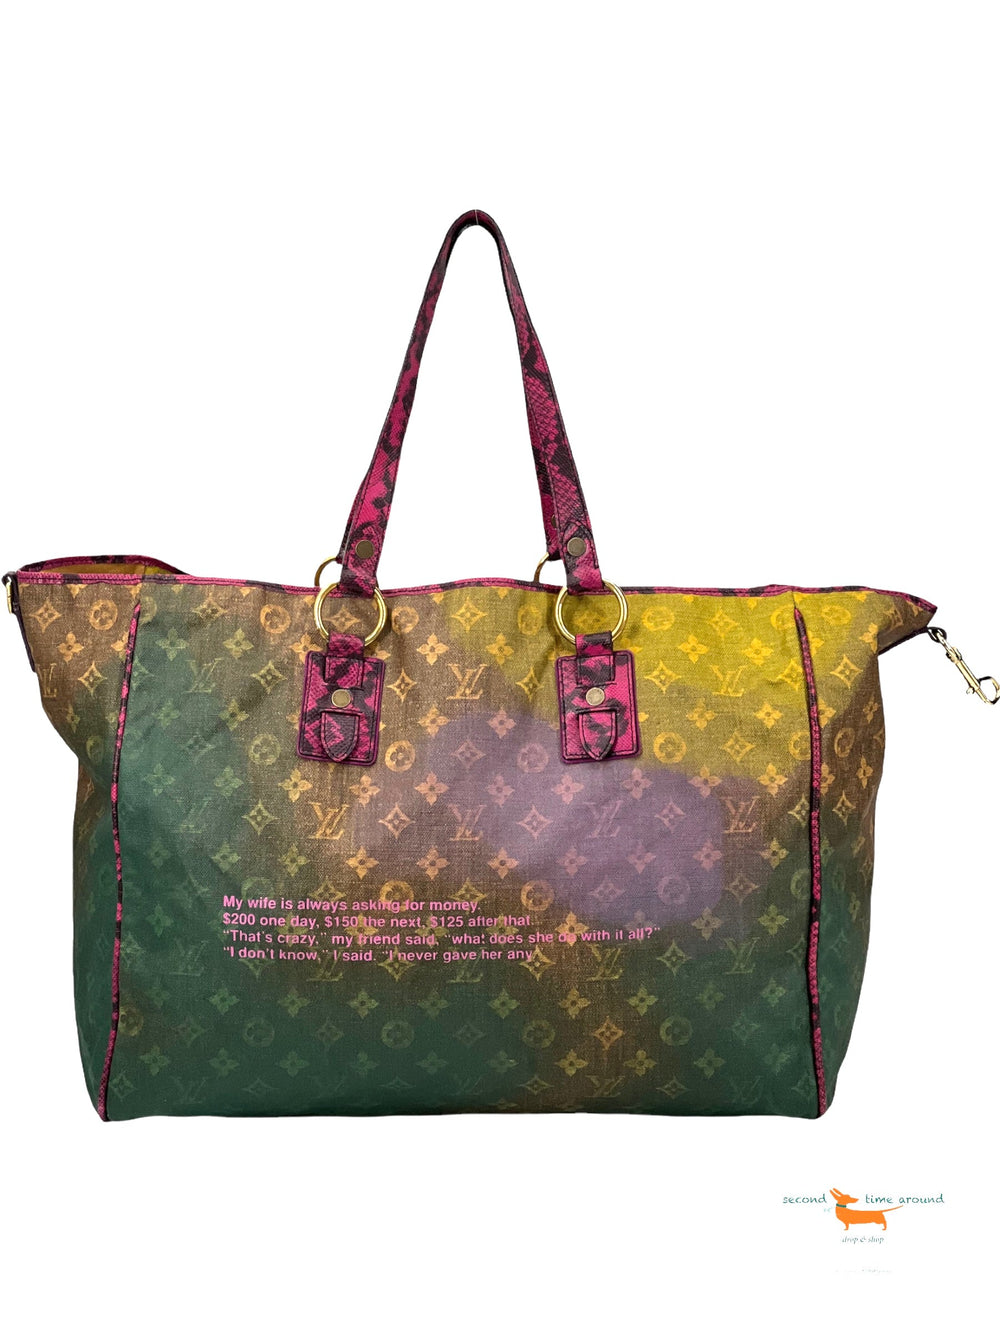 Louis Vuitton Richard Prince Limited Edition 50 cm Bag